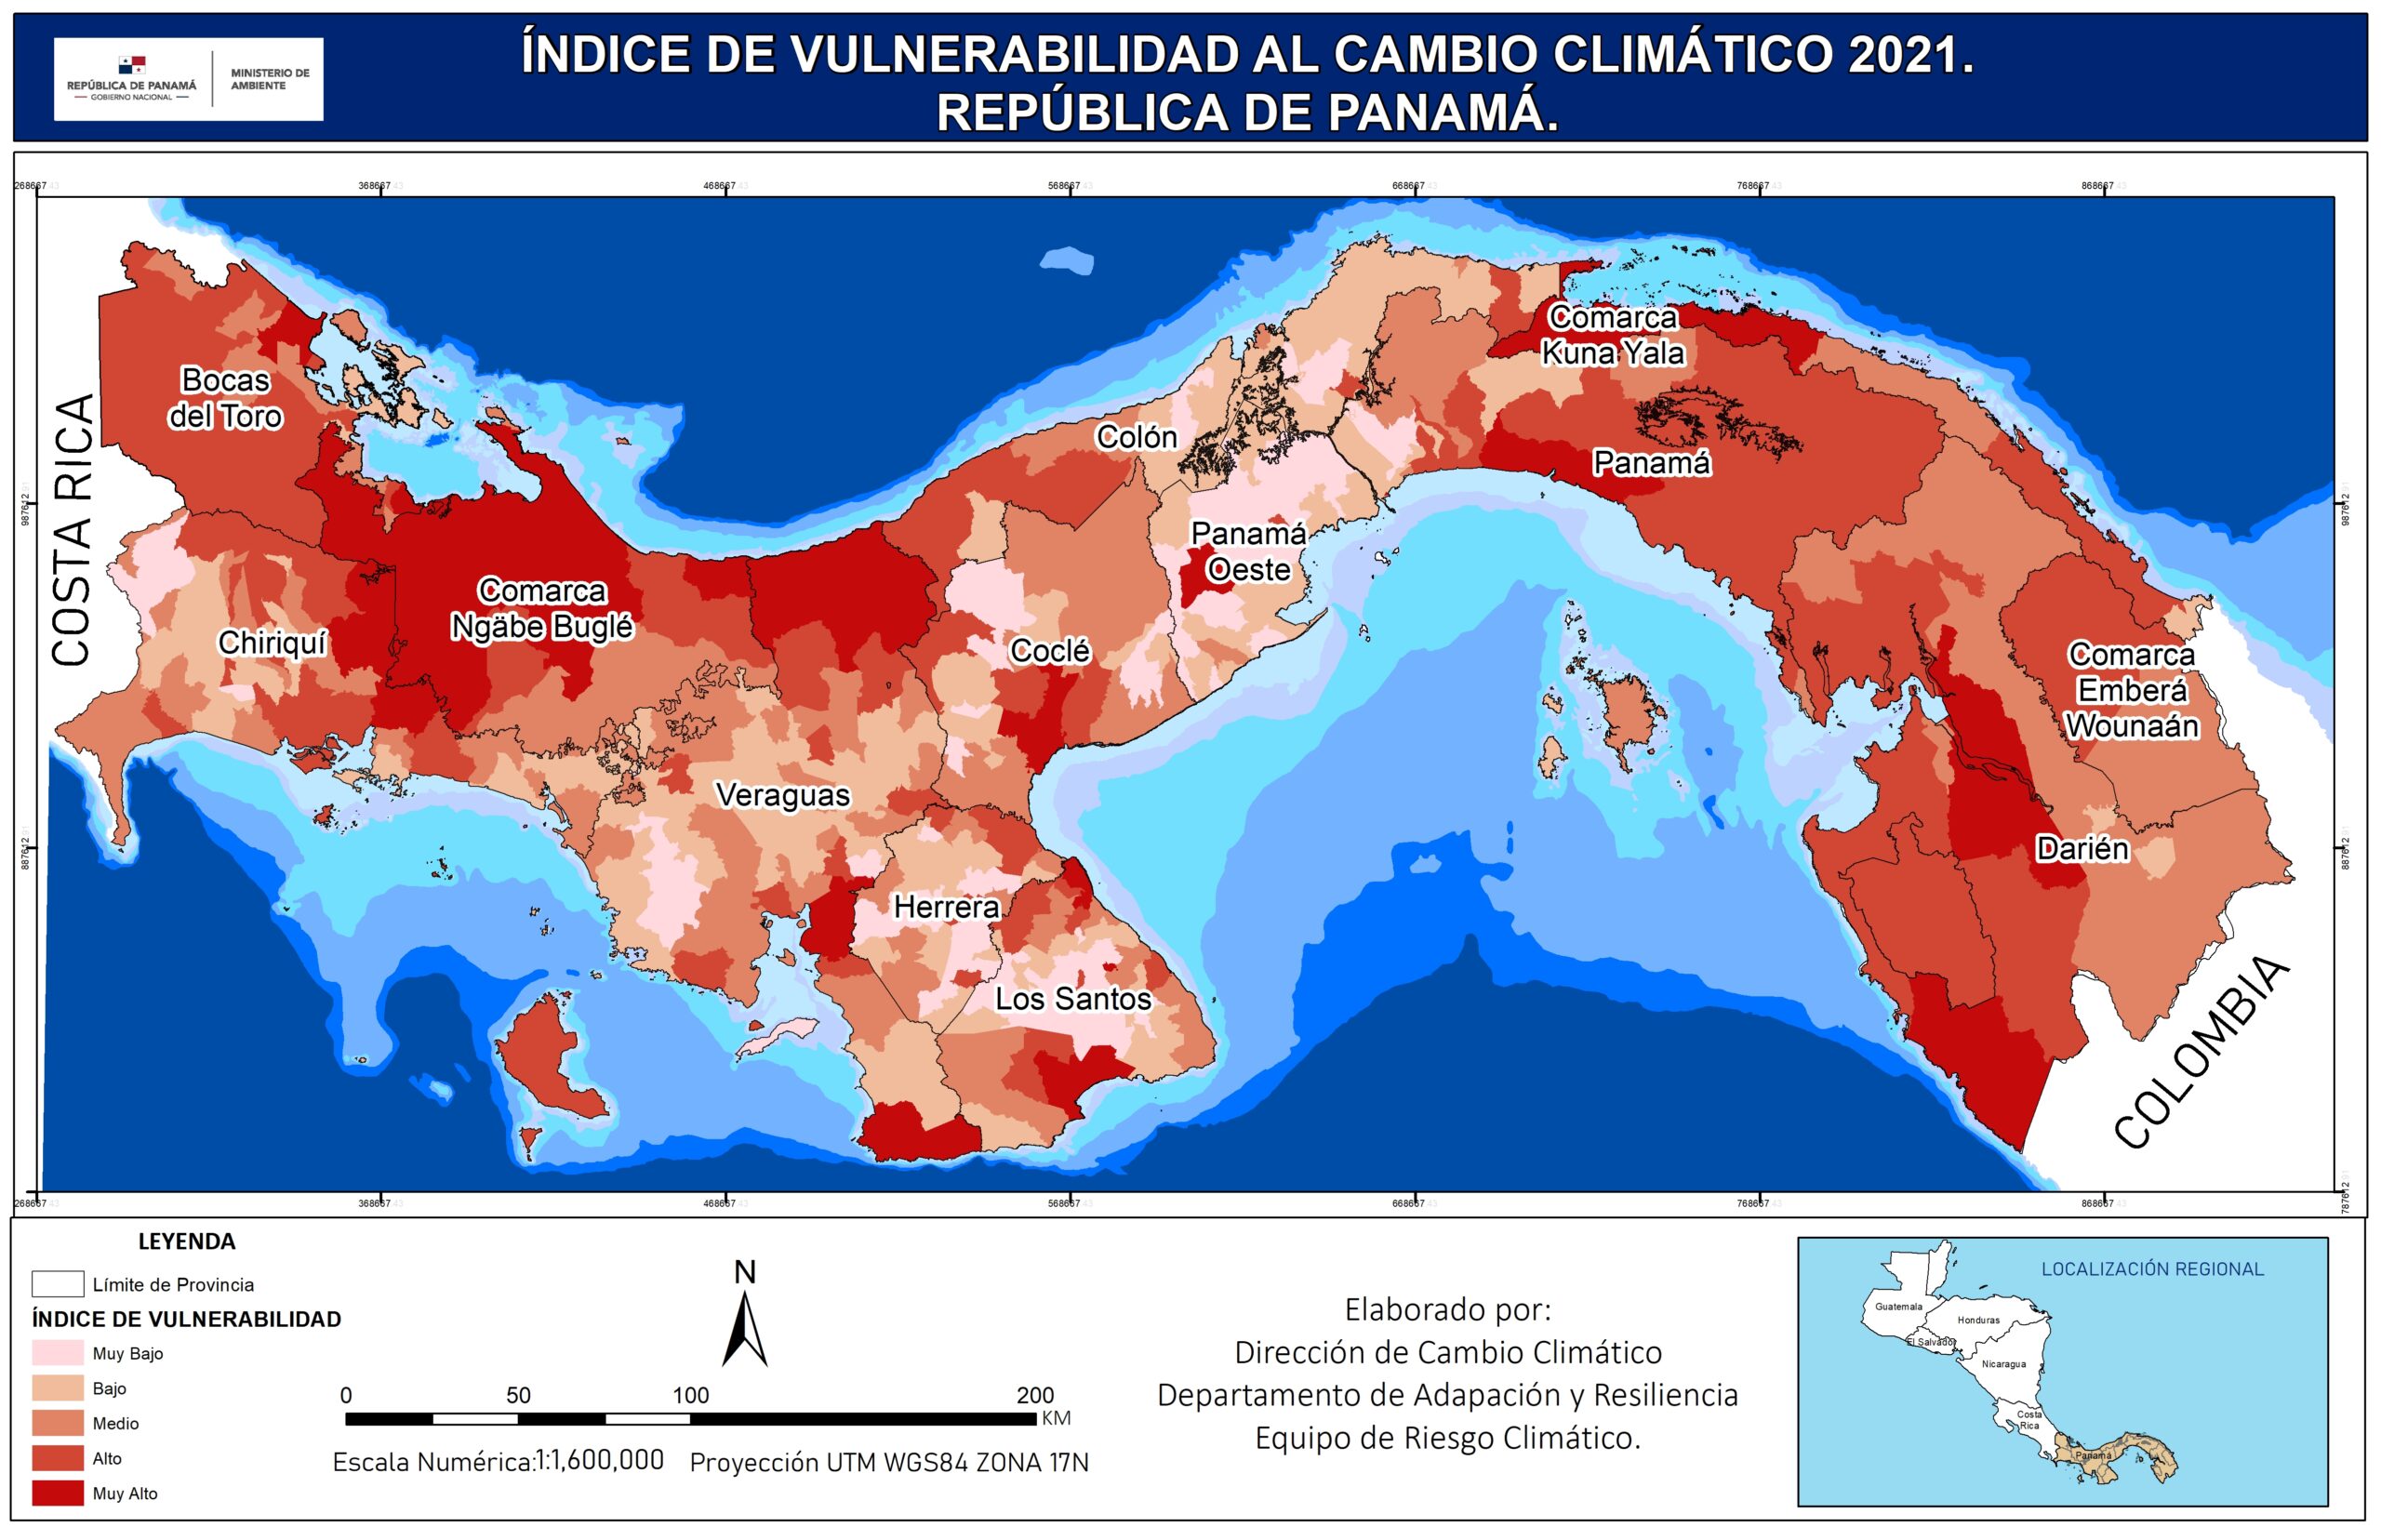 ÍNDICE DE VULNERABILIDAD AL CAMBIO CLIMÁTICO 2021